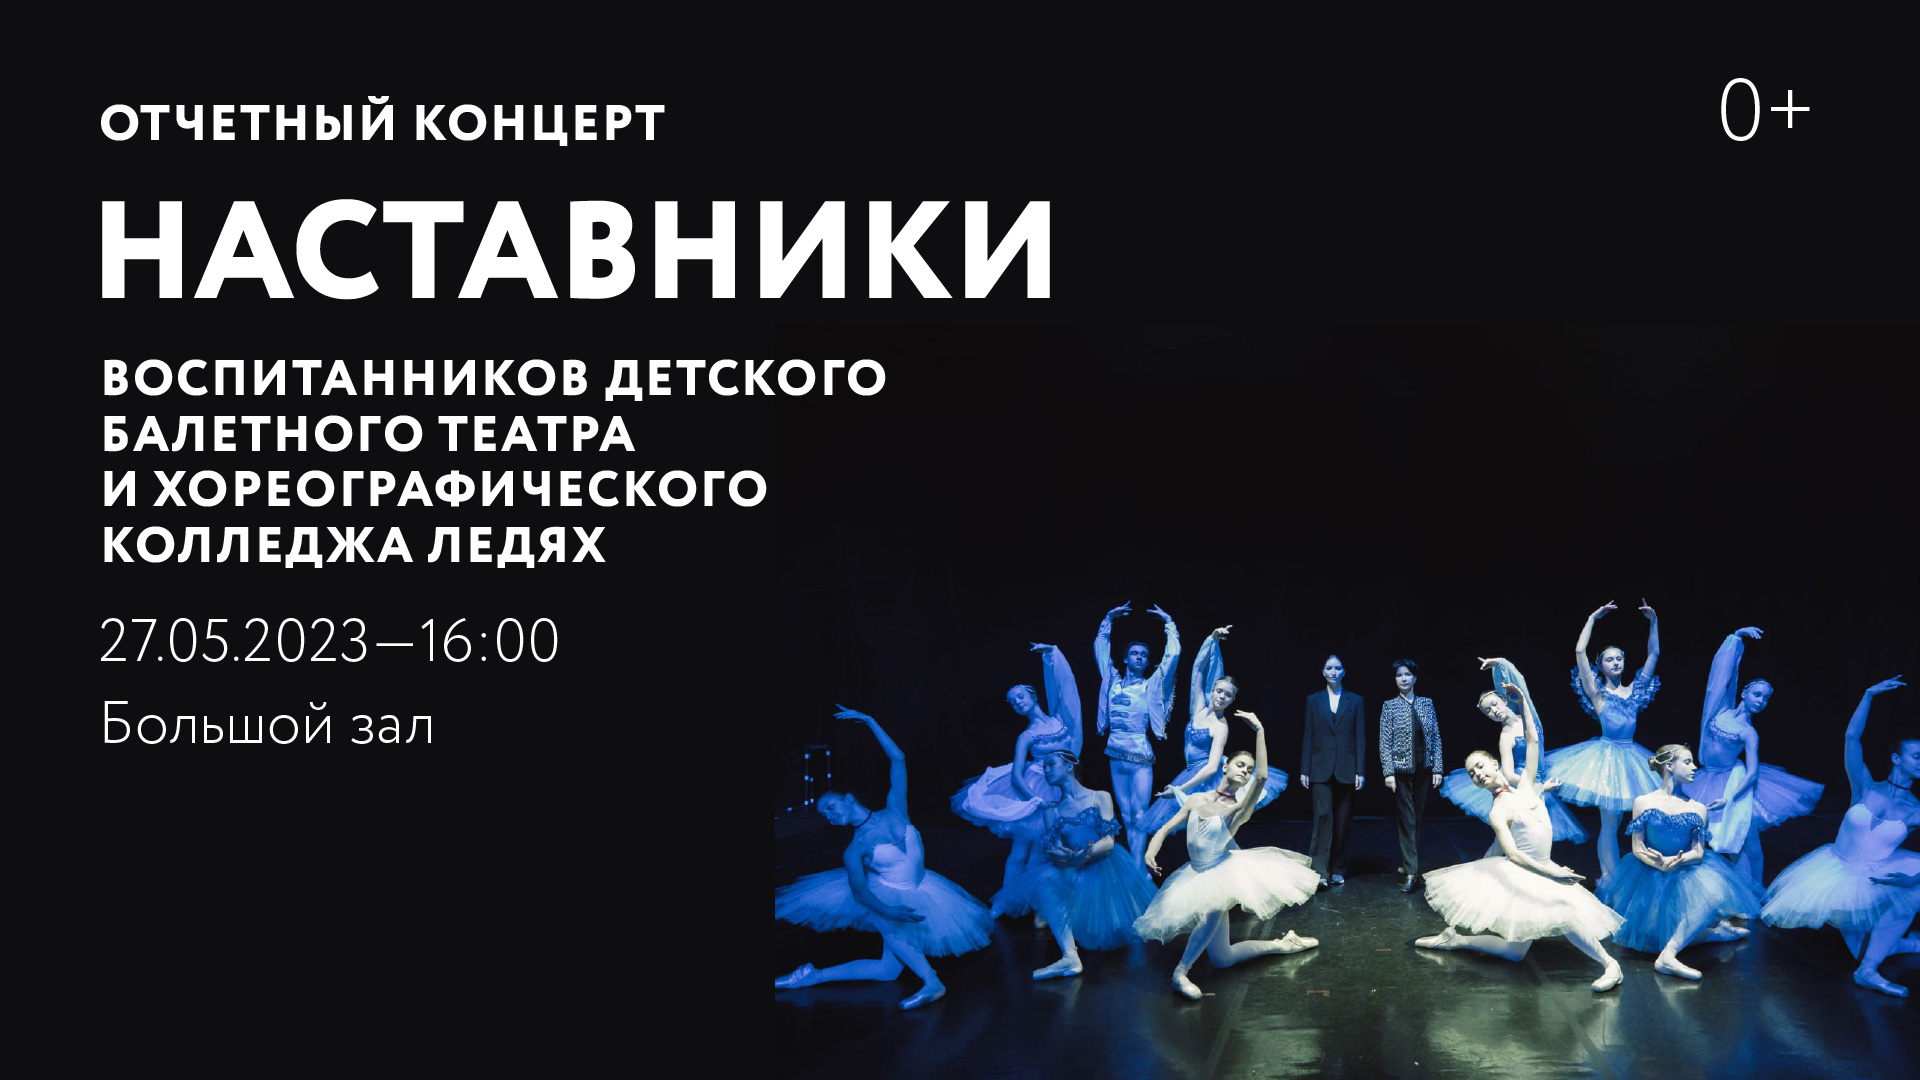 Отчетный концерт «Наставники» воспитанников Детского балетного театра и Хореографического колледжа Ледях